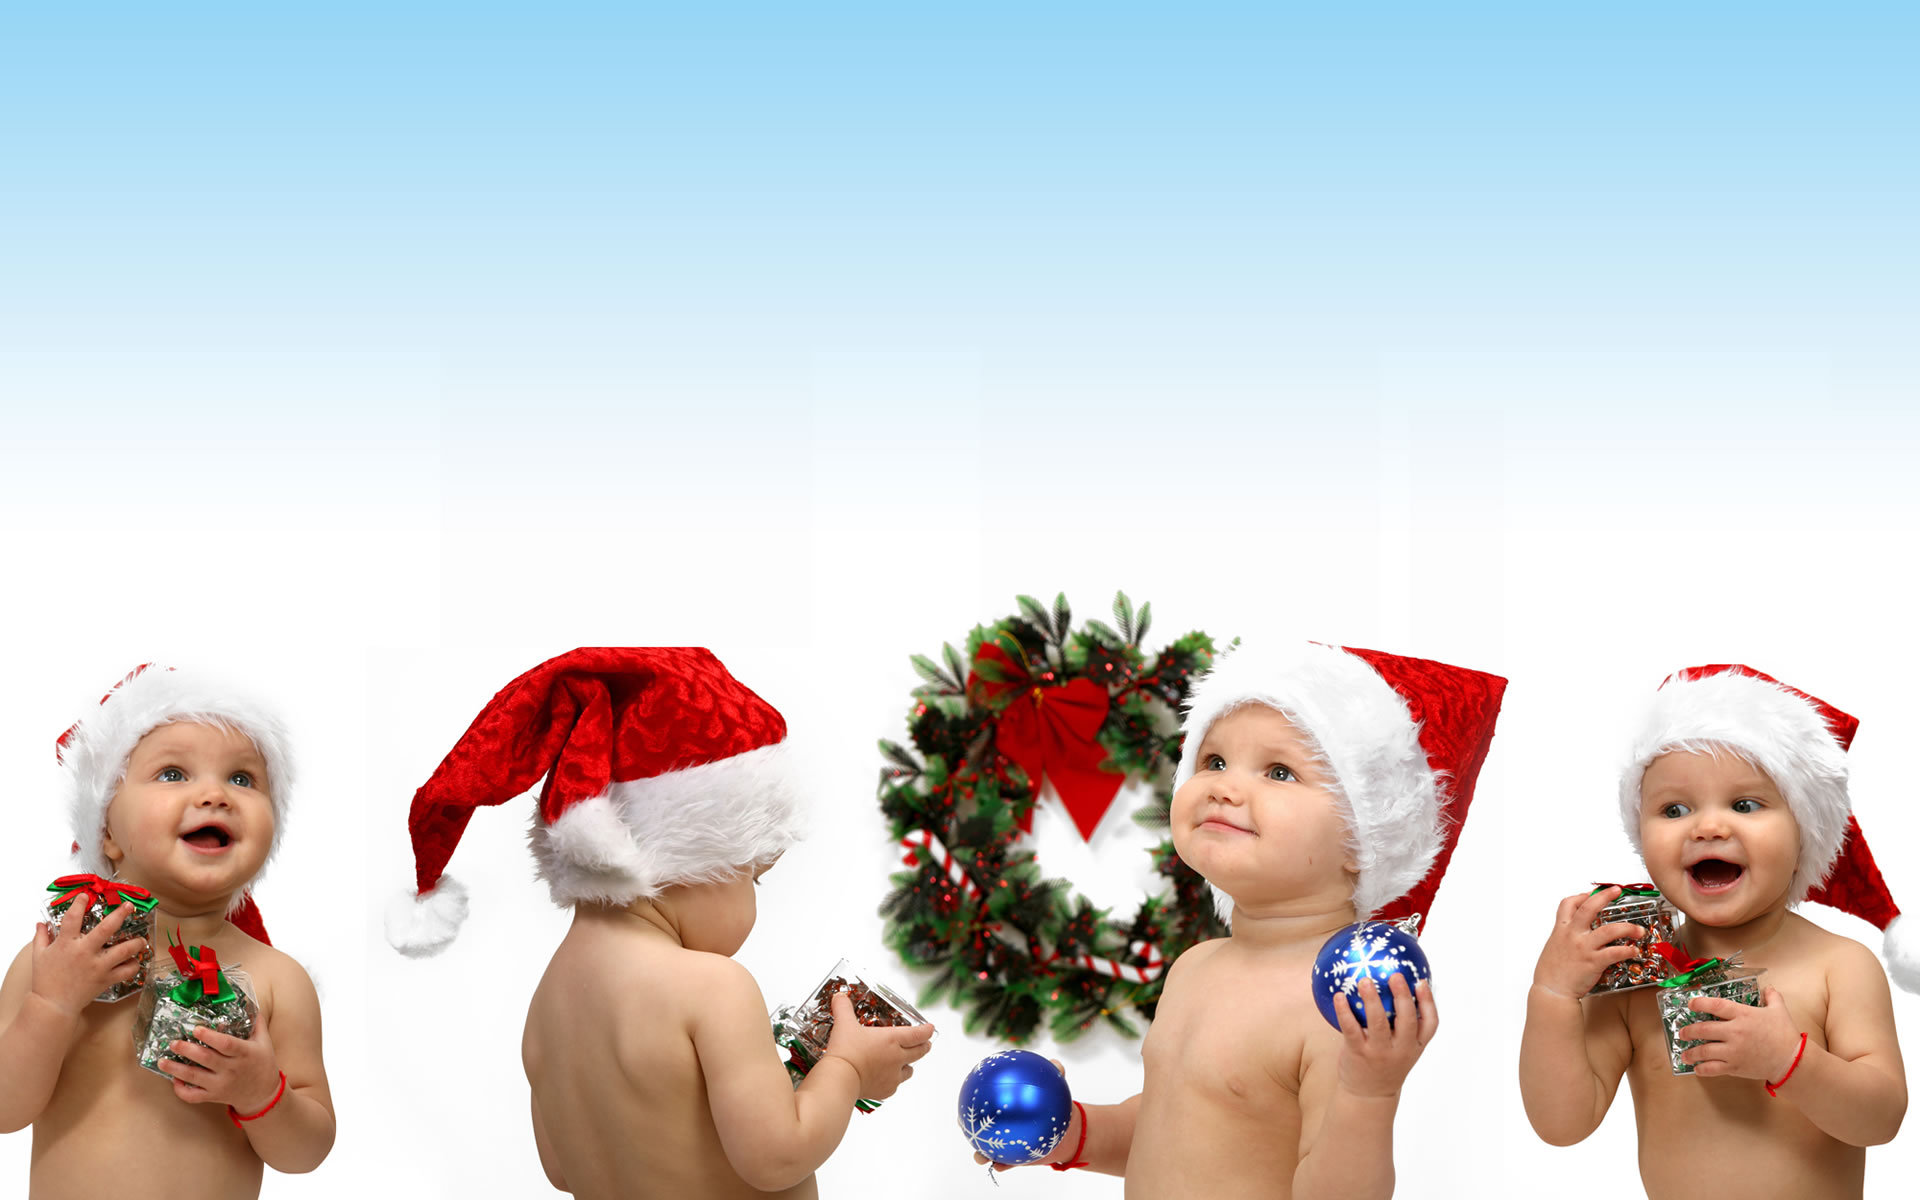 Скачать обои бесплатно Праздники, Рождество (Christmas Xmas), Новый Год (New Year), Дети картинка на рабочий стол ПК